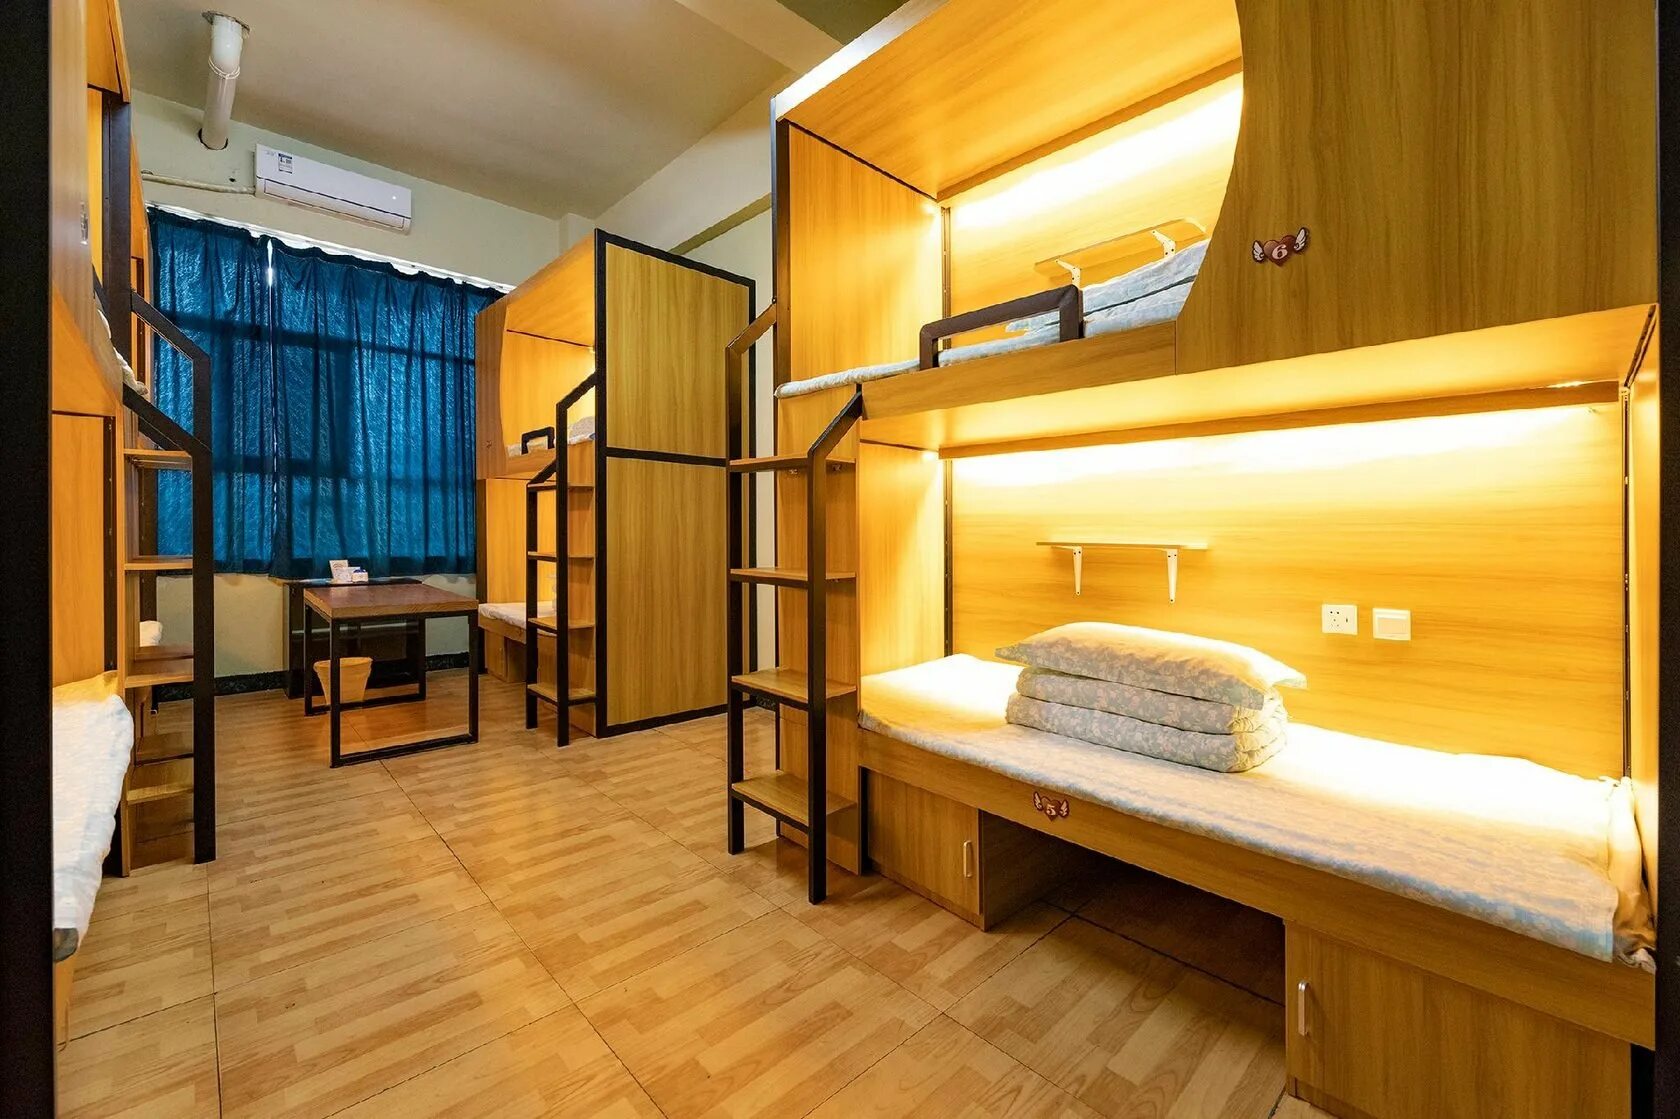 Общежития примеры. Кровати для хостела. Капсульные кровати для хостела. Двухъярусные кровати для хостелов. Хостел кровати.